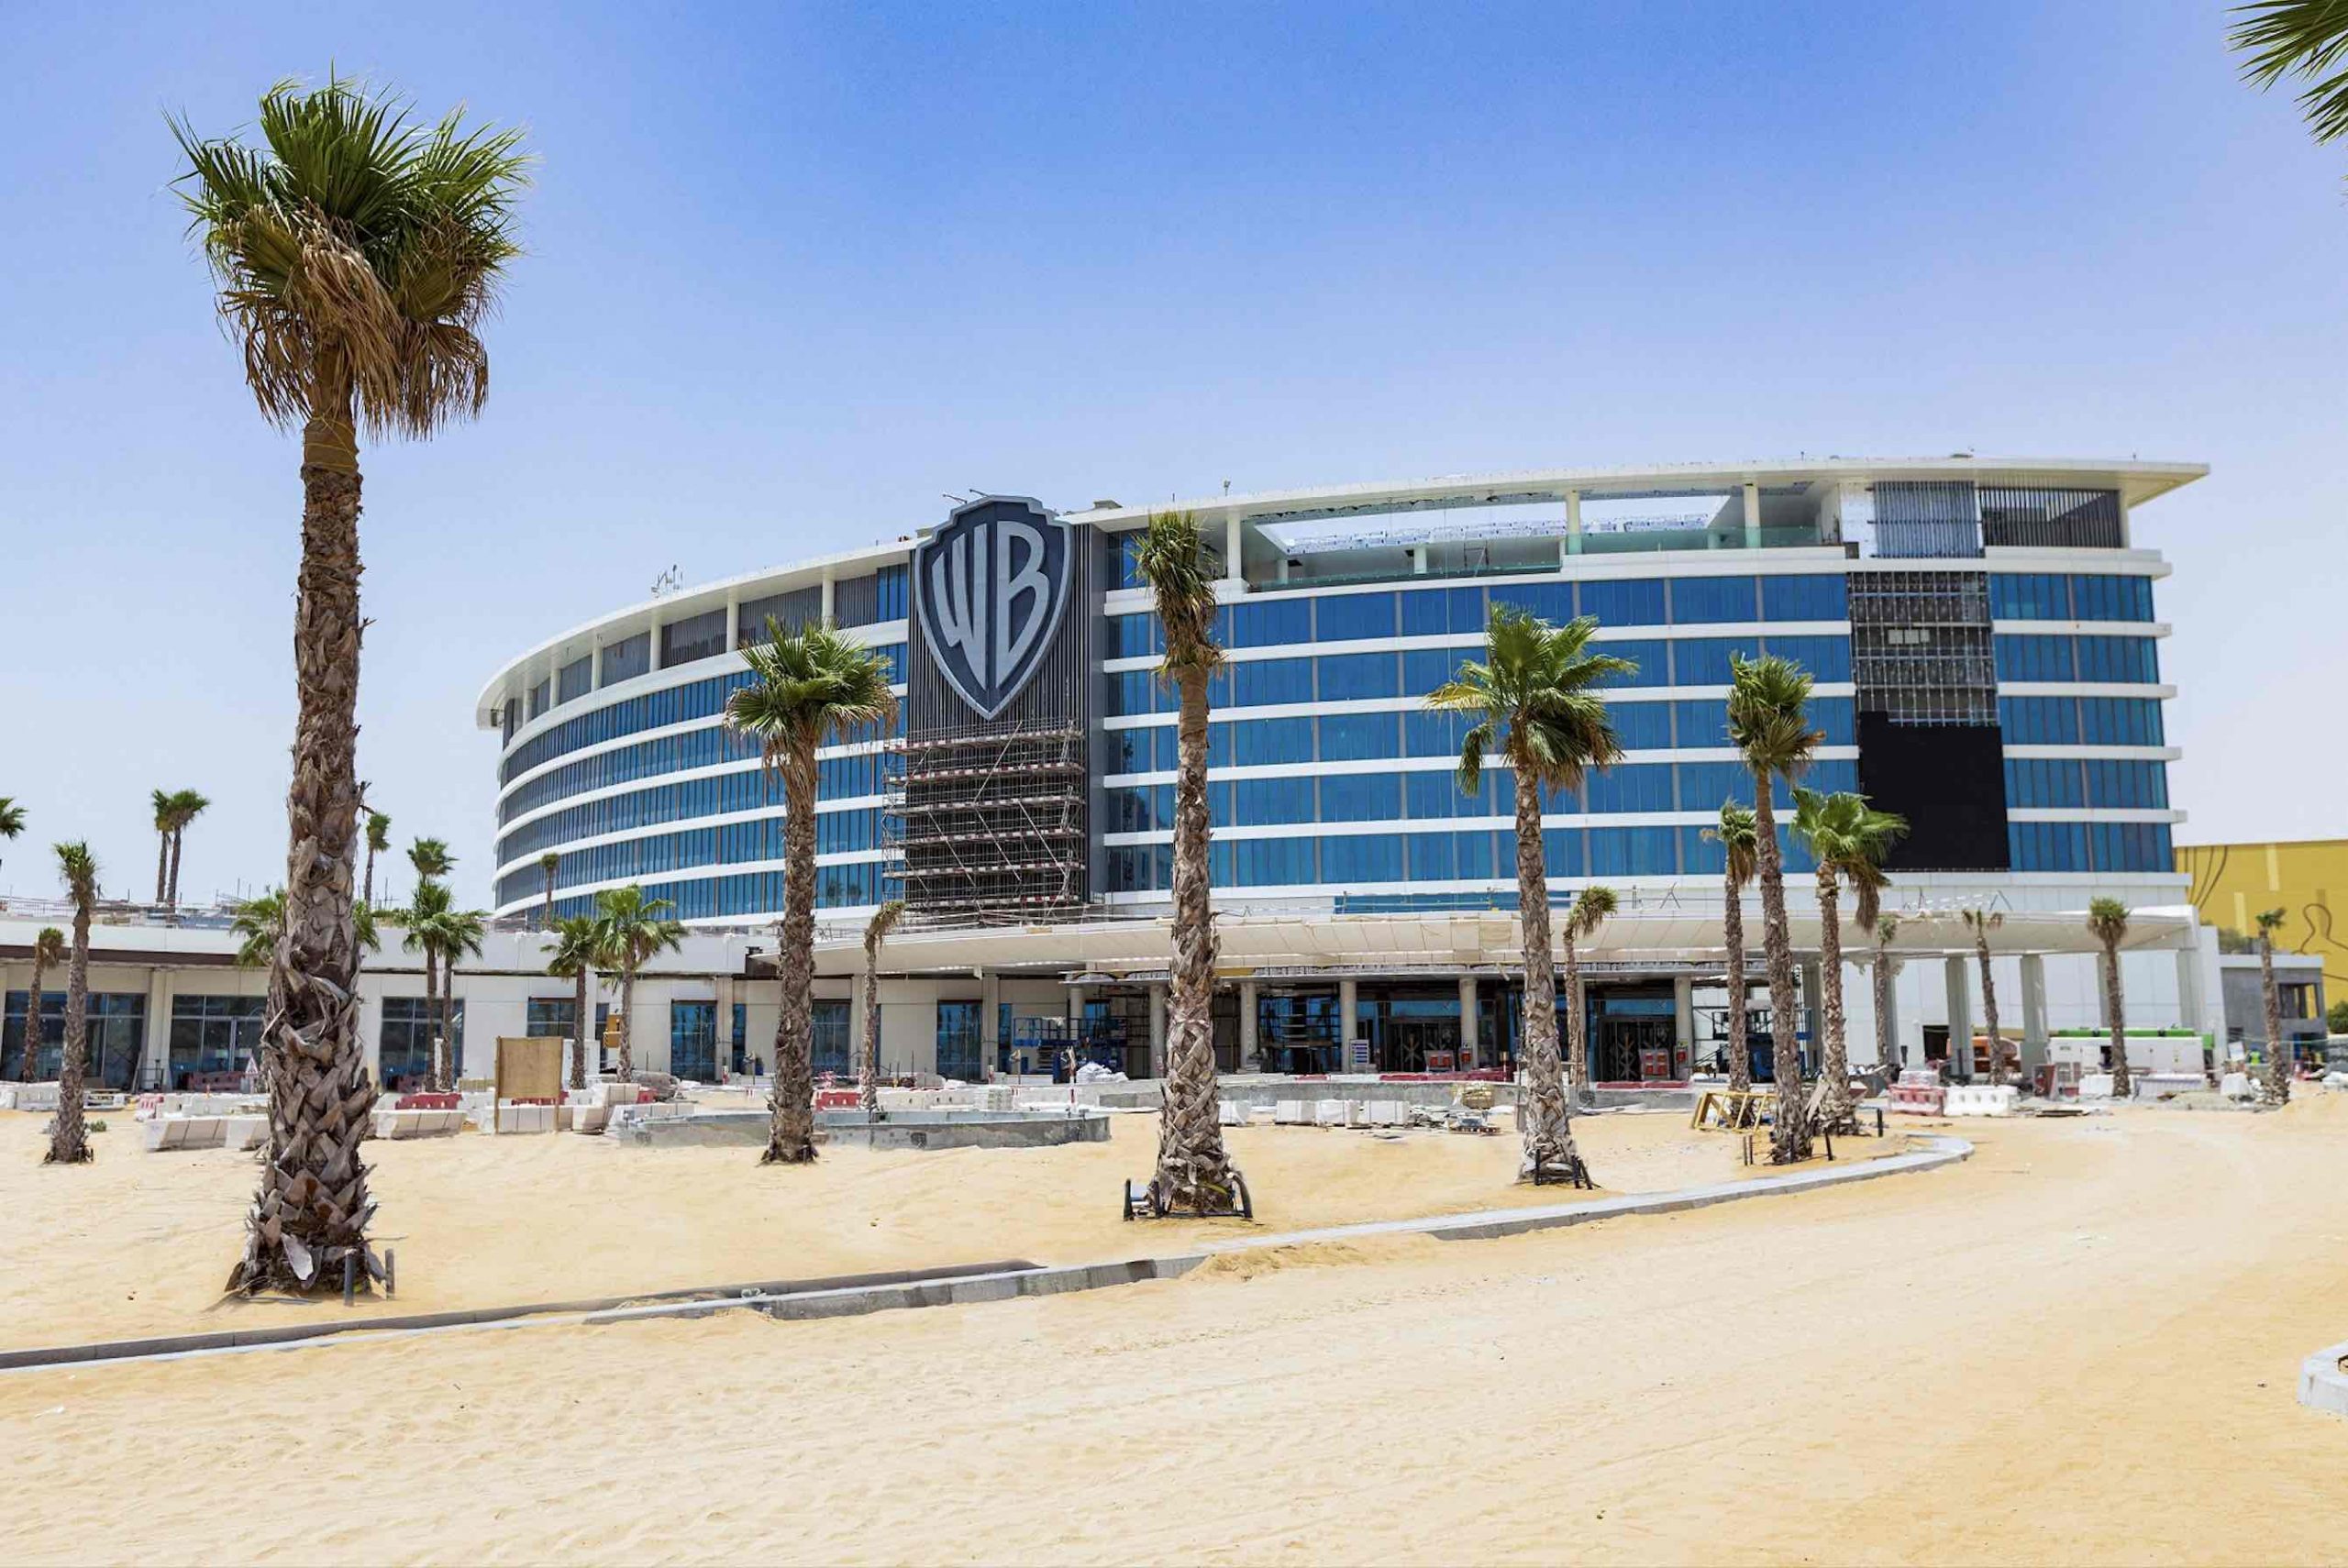 The WB Abu Dhabi